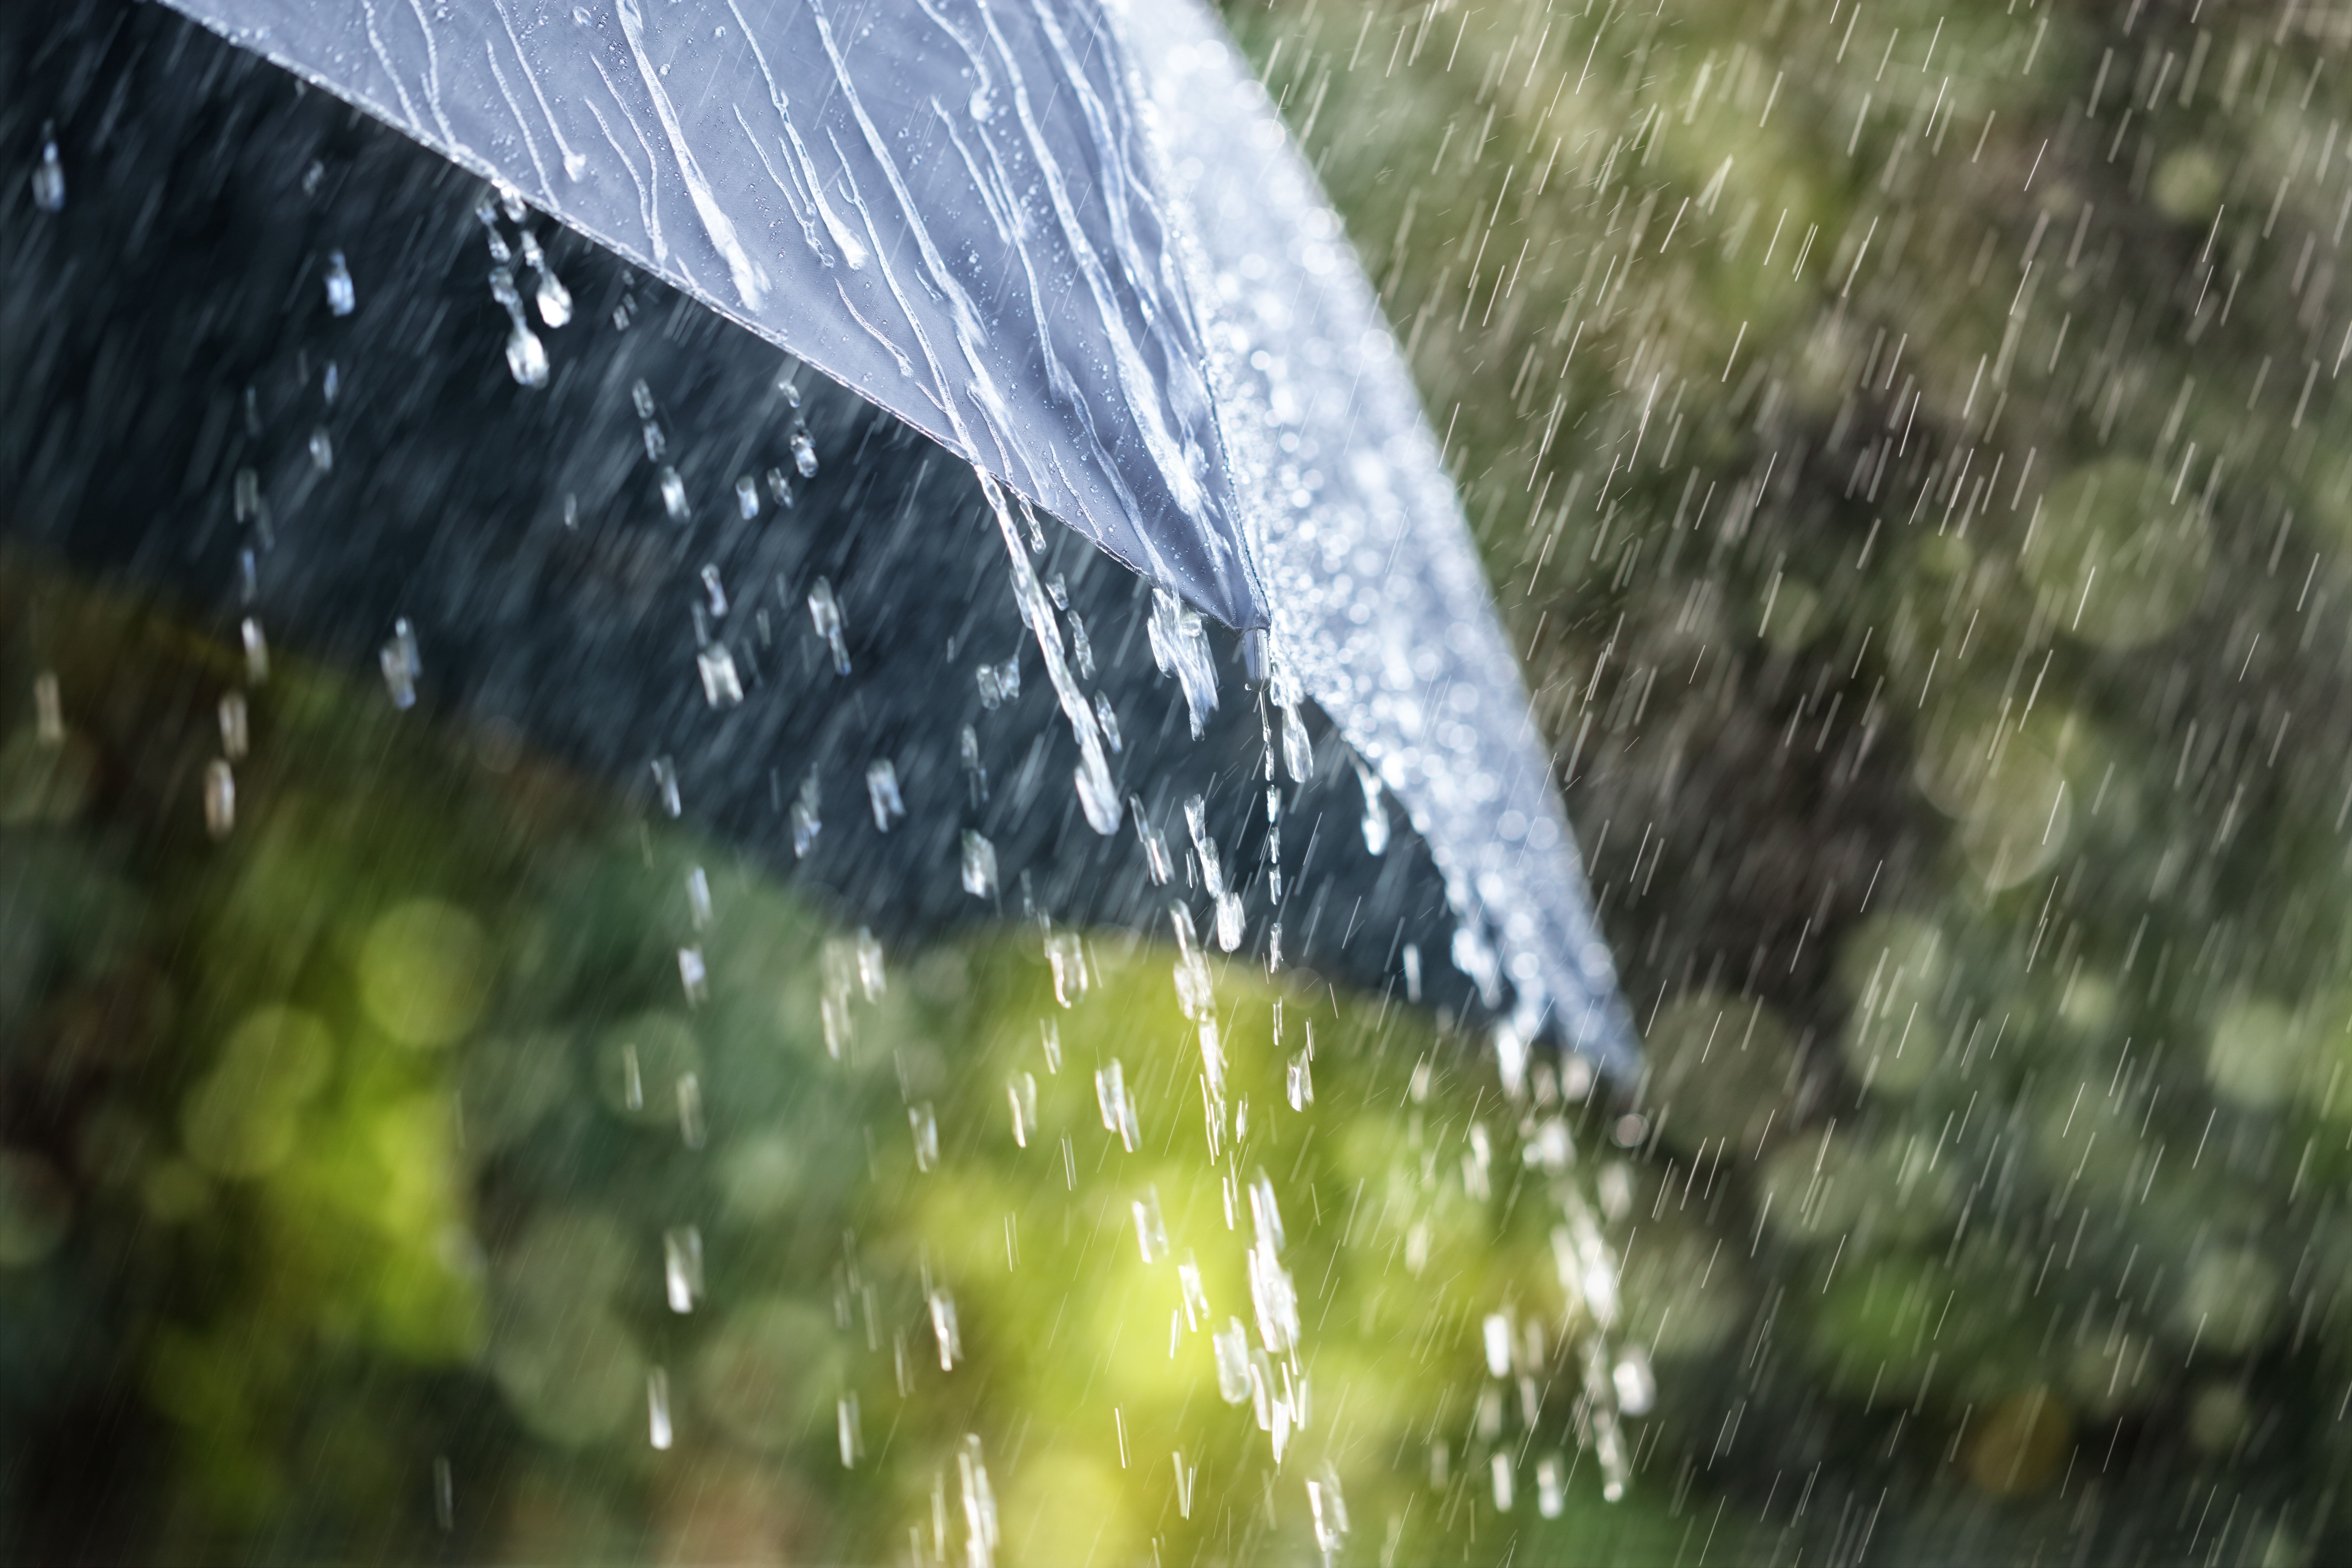 An umbrella amidst strong rain. | Source: Shutterstock